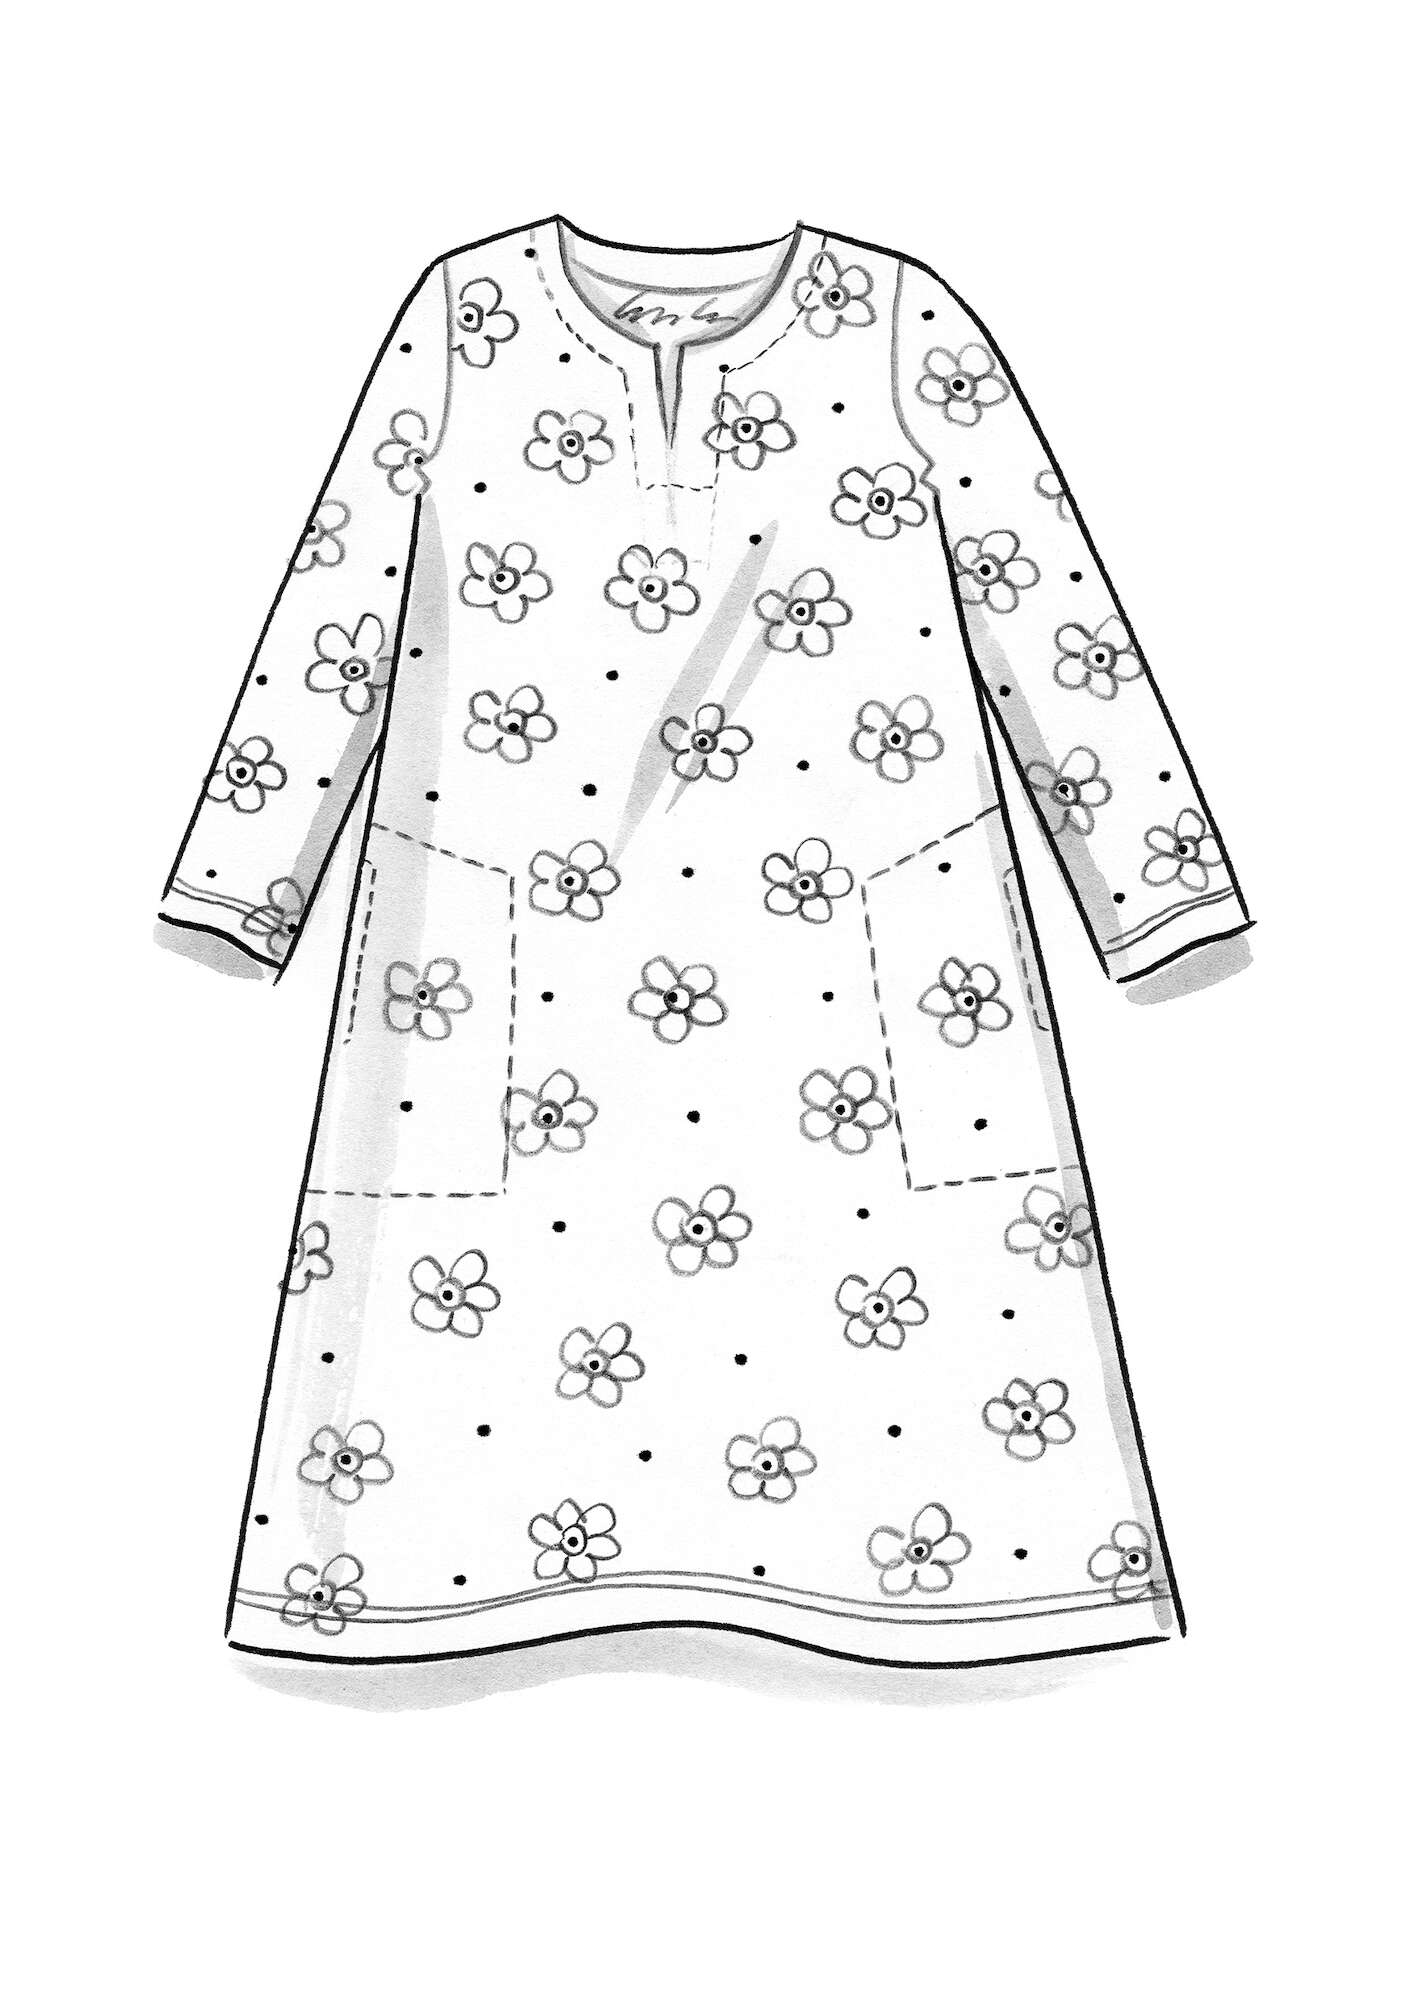 Tricot jurk  Belle  van biologisch katoen/elastaan indigoblauw/dessin